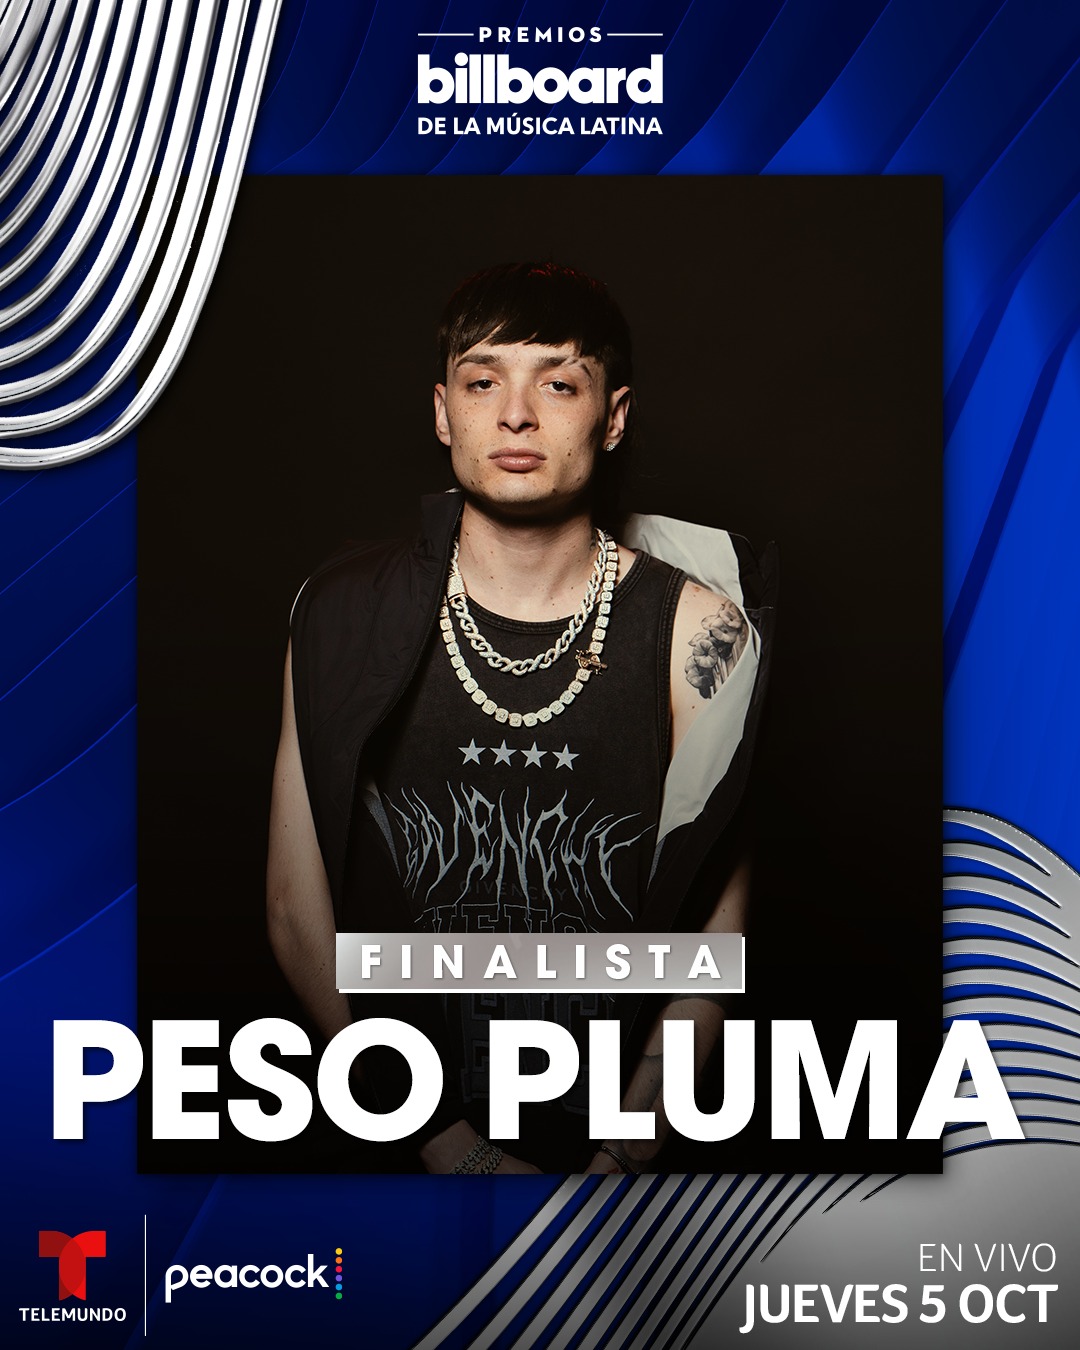 PESO PLUMA brilla como el artista mas nominado en Premios Billboard